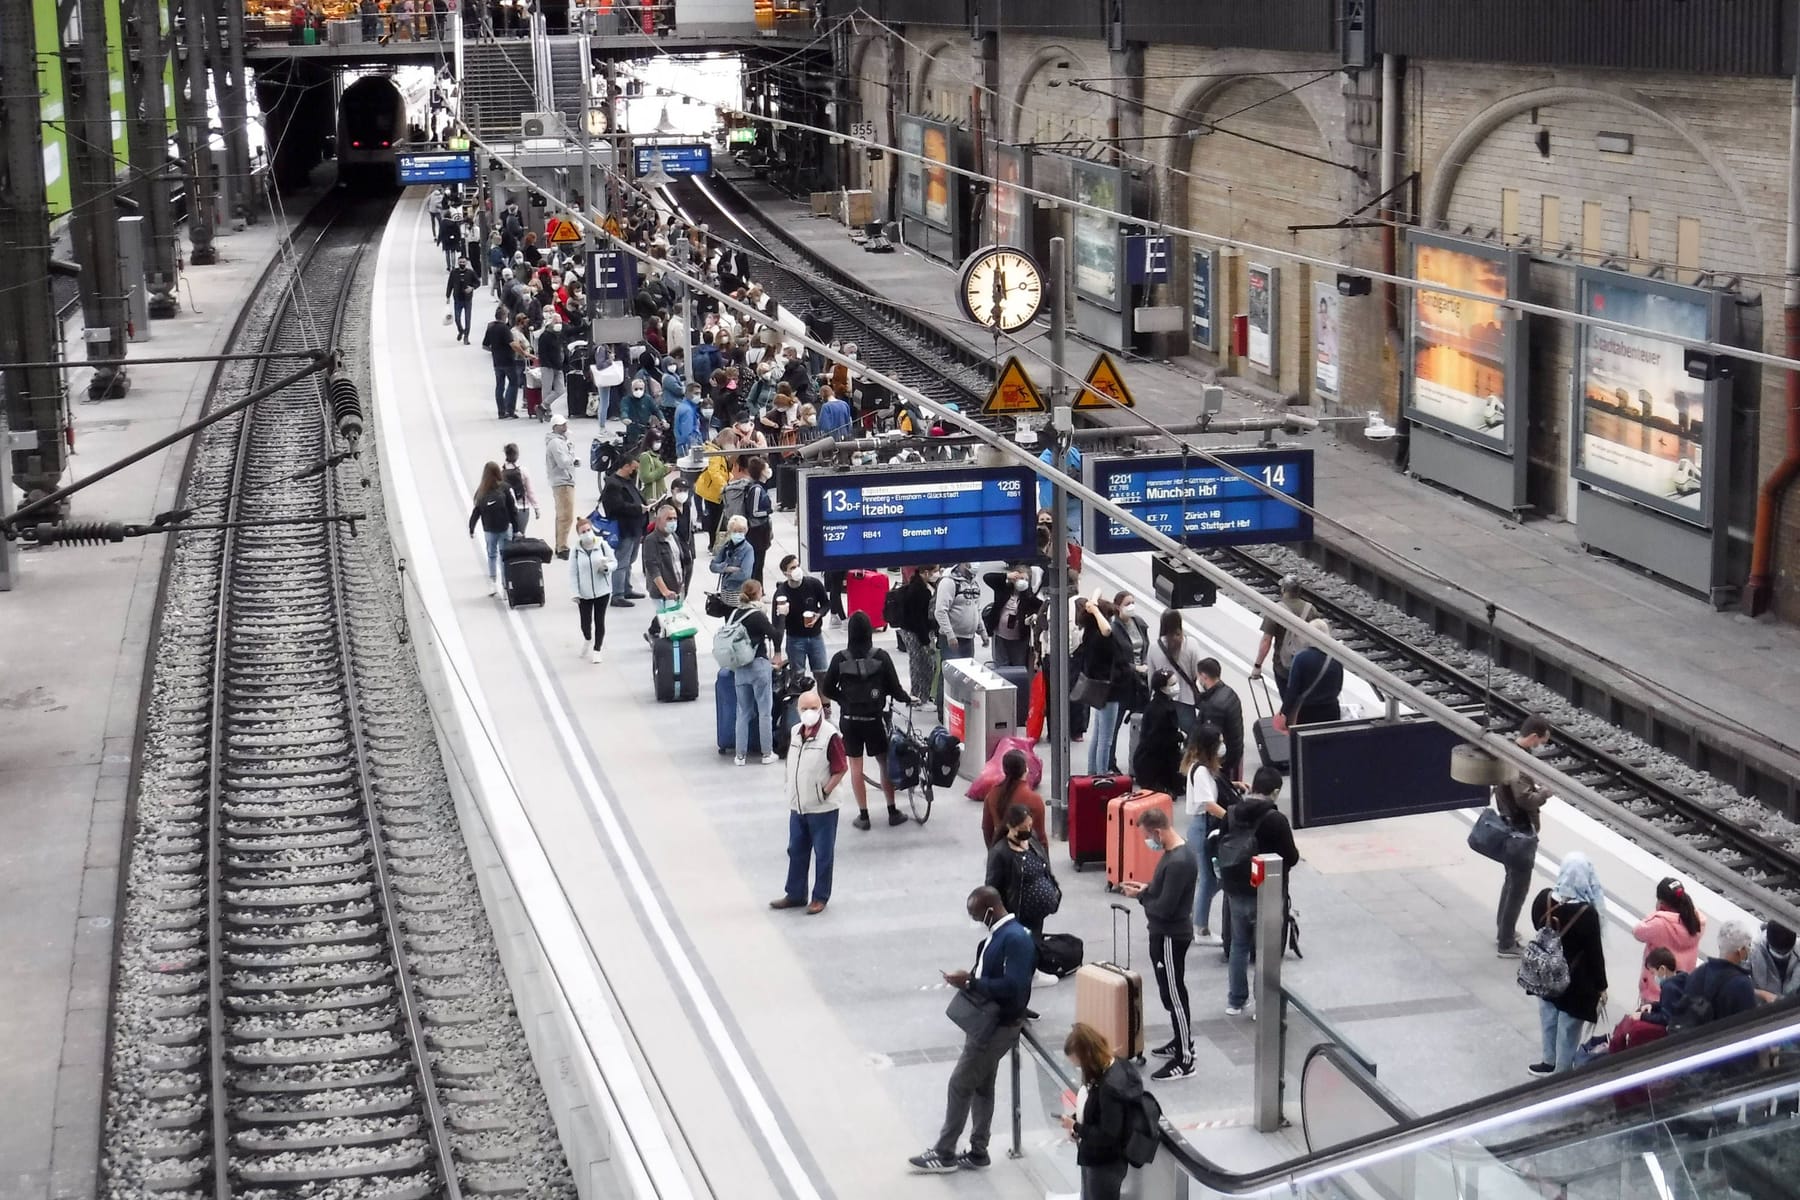 GDL-Streik in München: S-Bahn-Verkehr weiterhin massiv eingeschränkt -  München - SZ.de